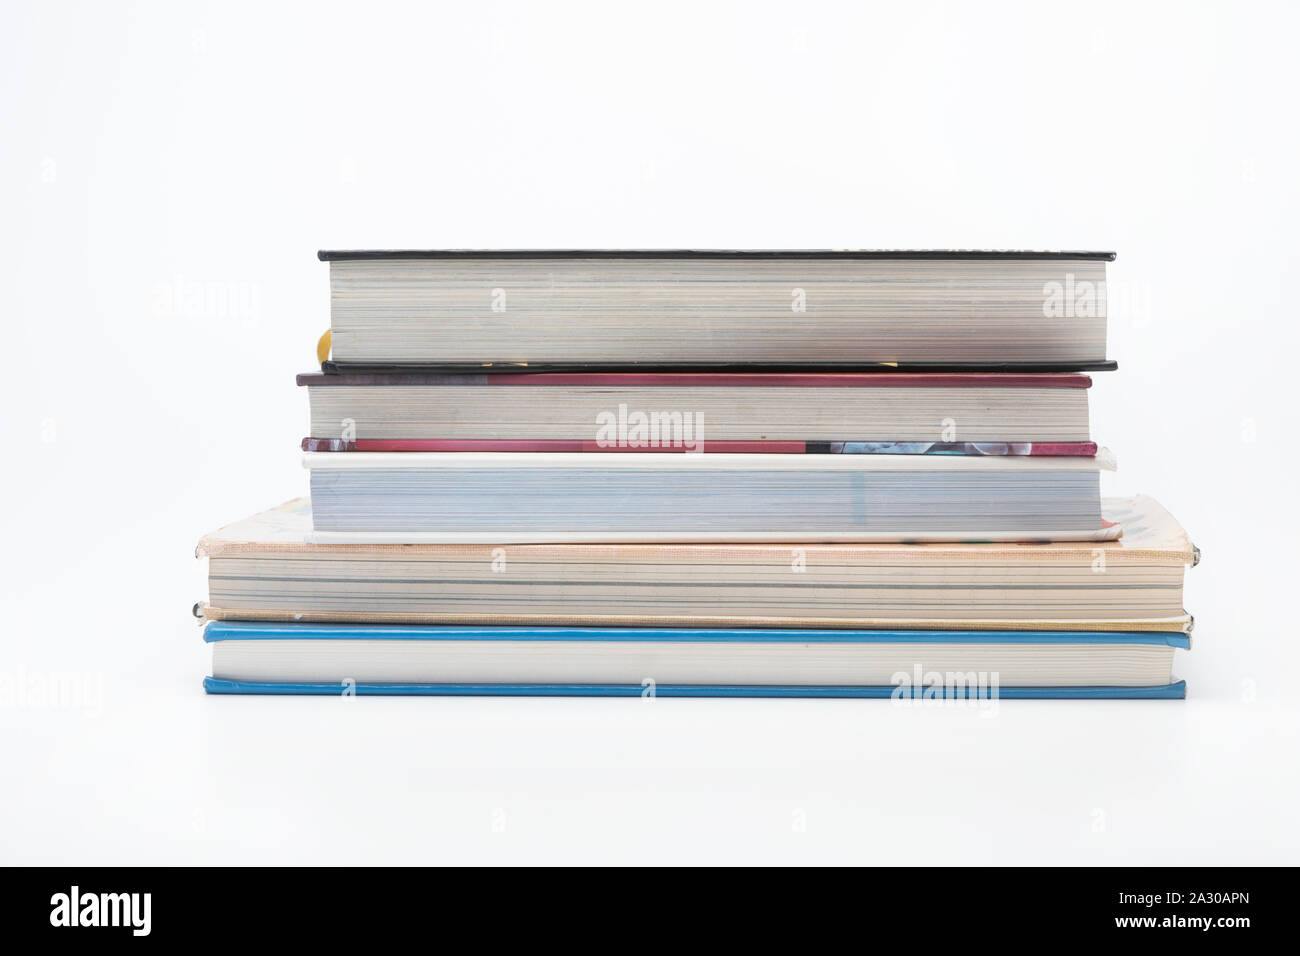 A pile of hardback books Stock Photo